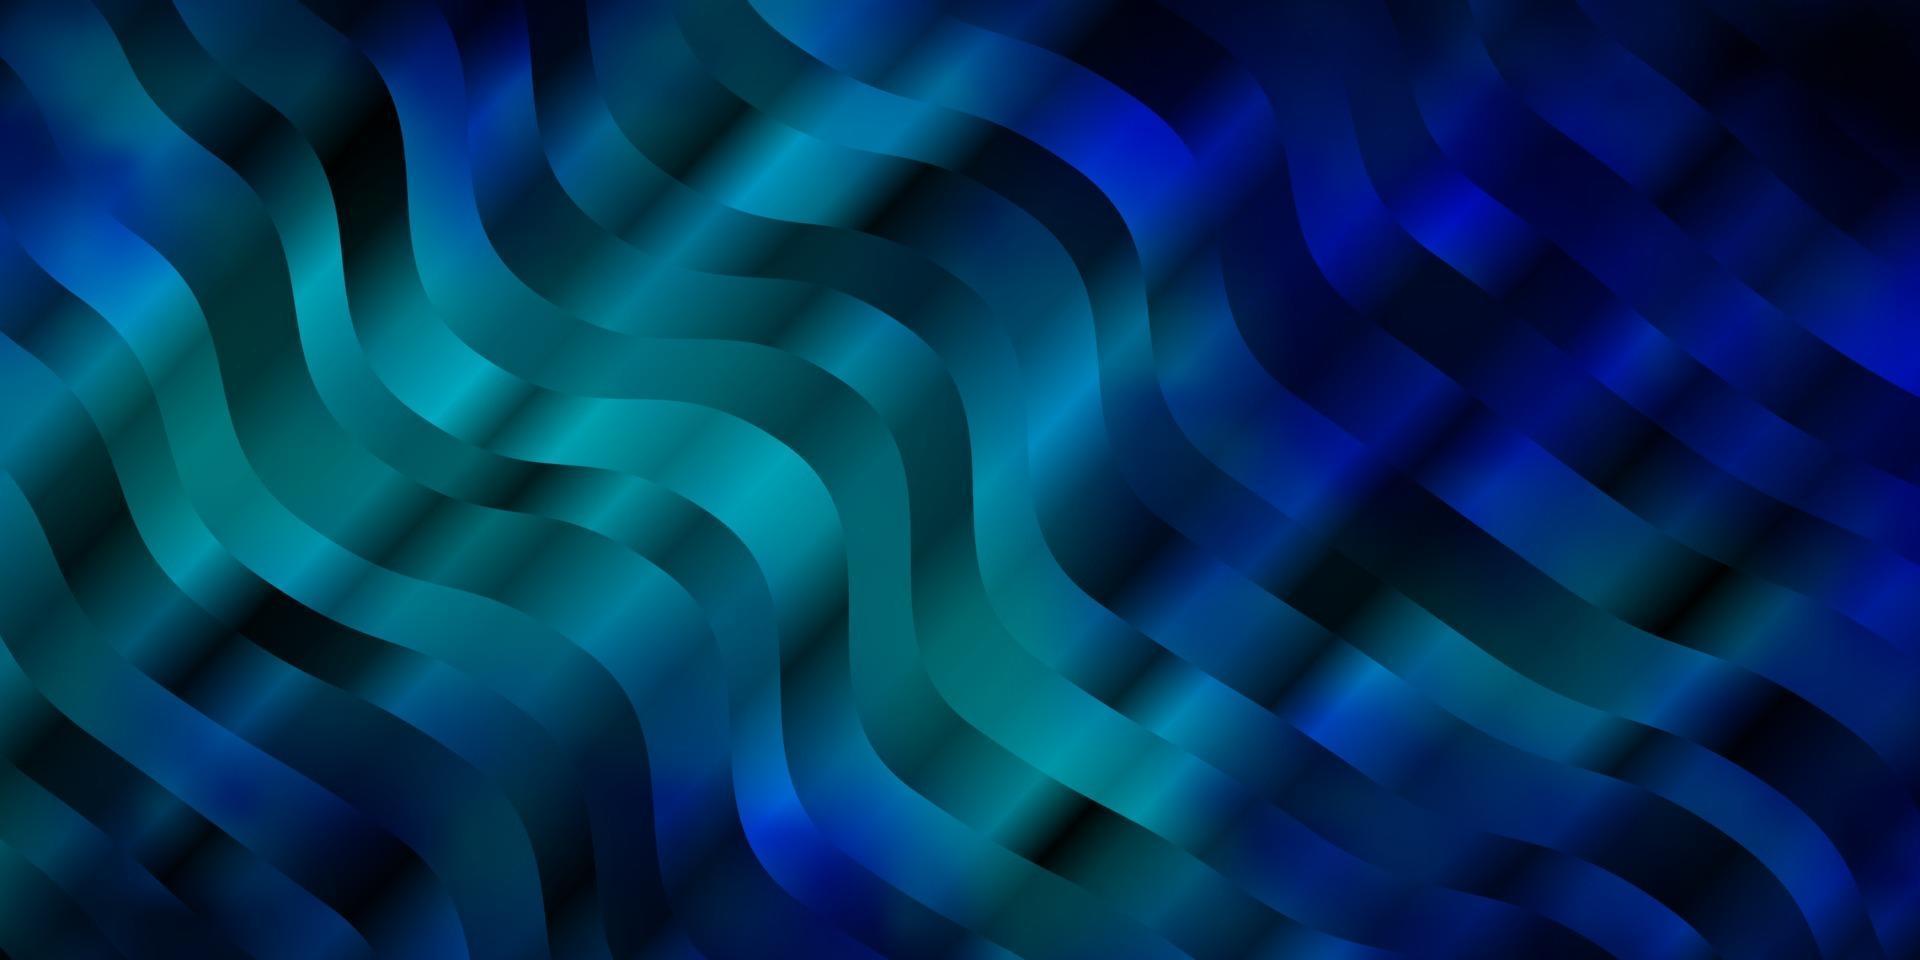 diseño de vector azul oscuro con líneas torcidas.